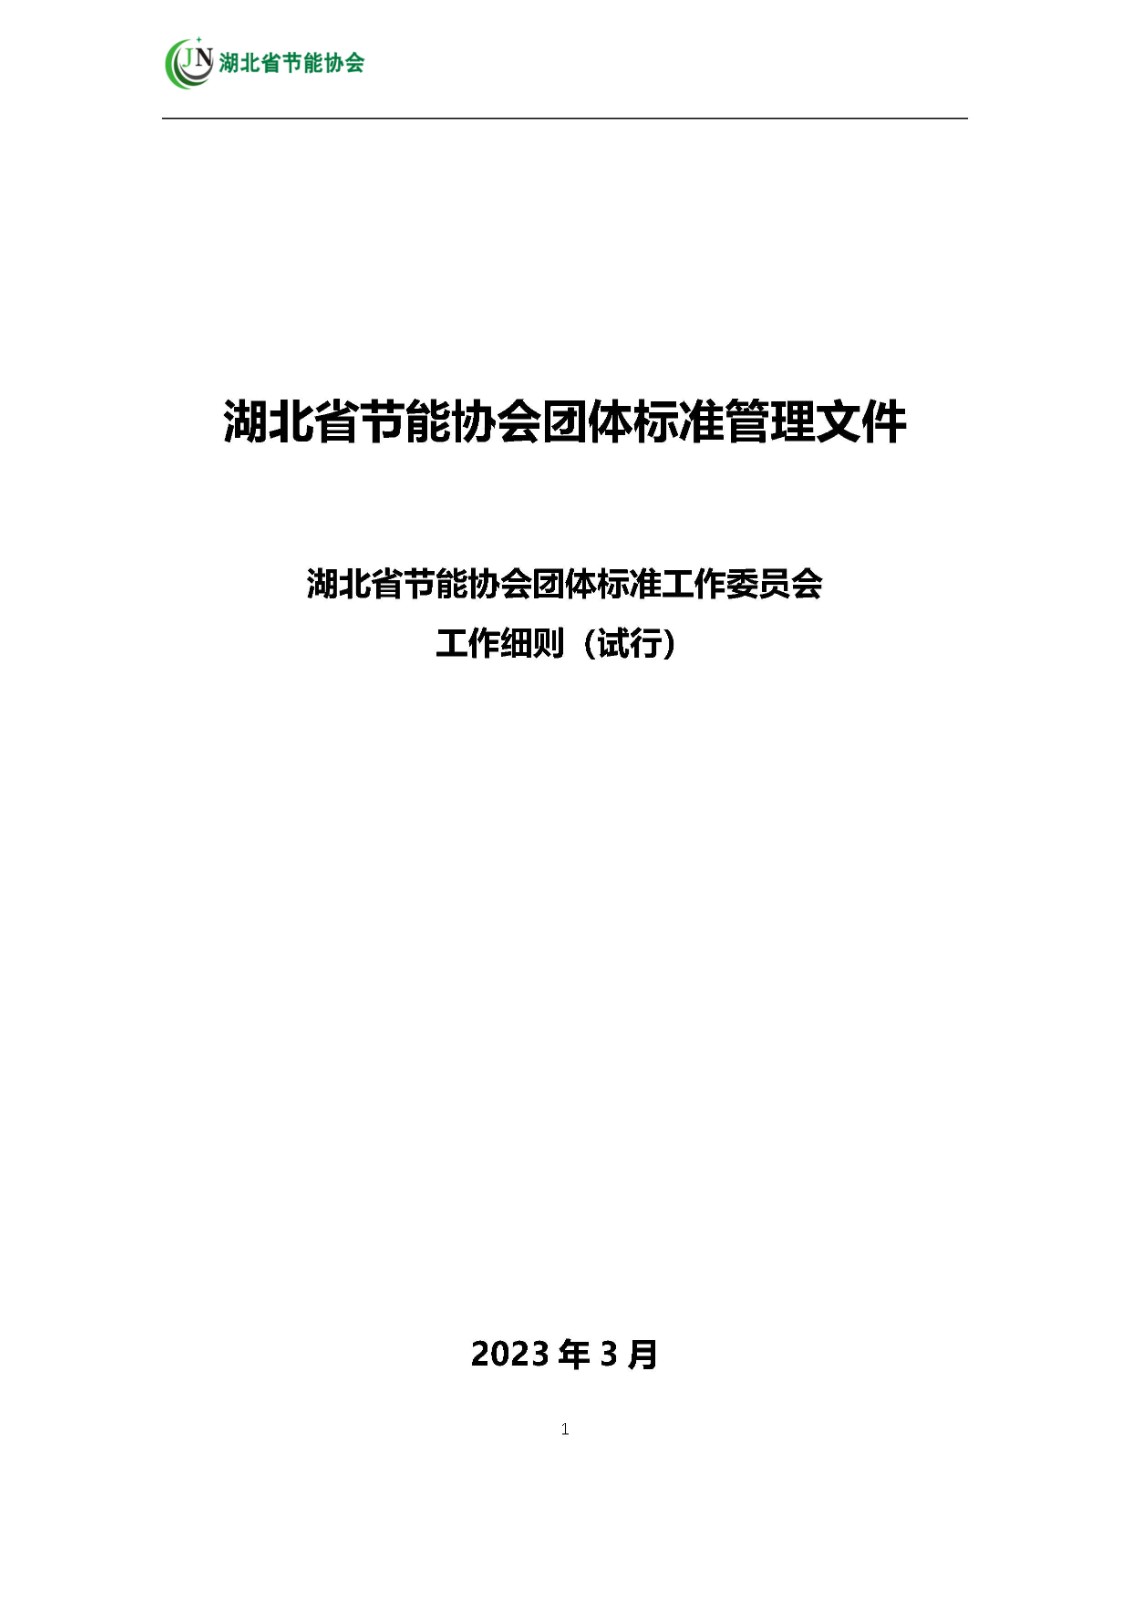 标委会文件  附件：湖北省节能协会标准化技术委员会工作细则  230304_Page1.jpg